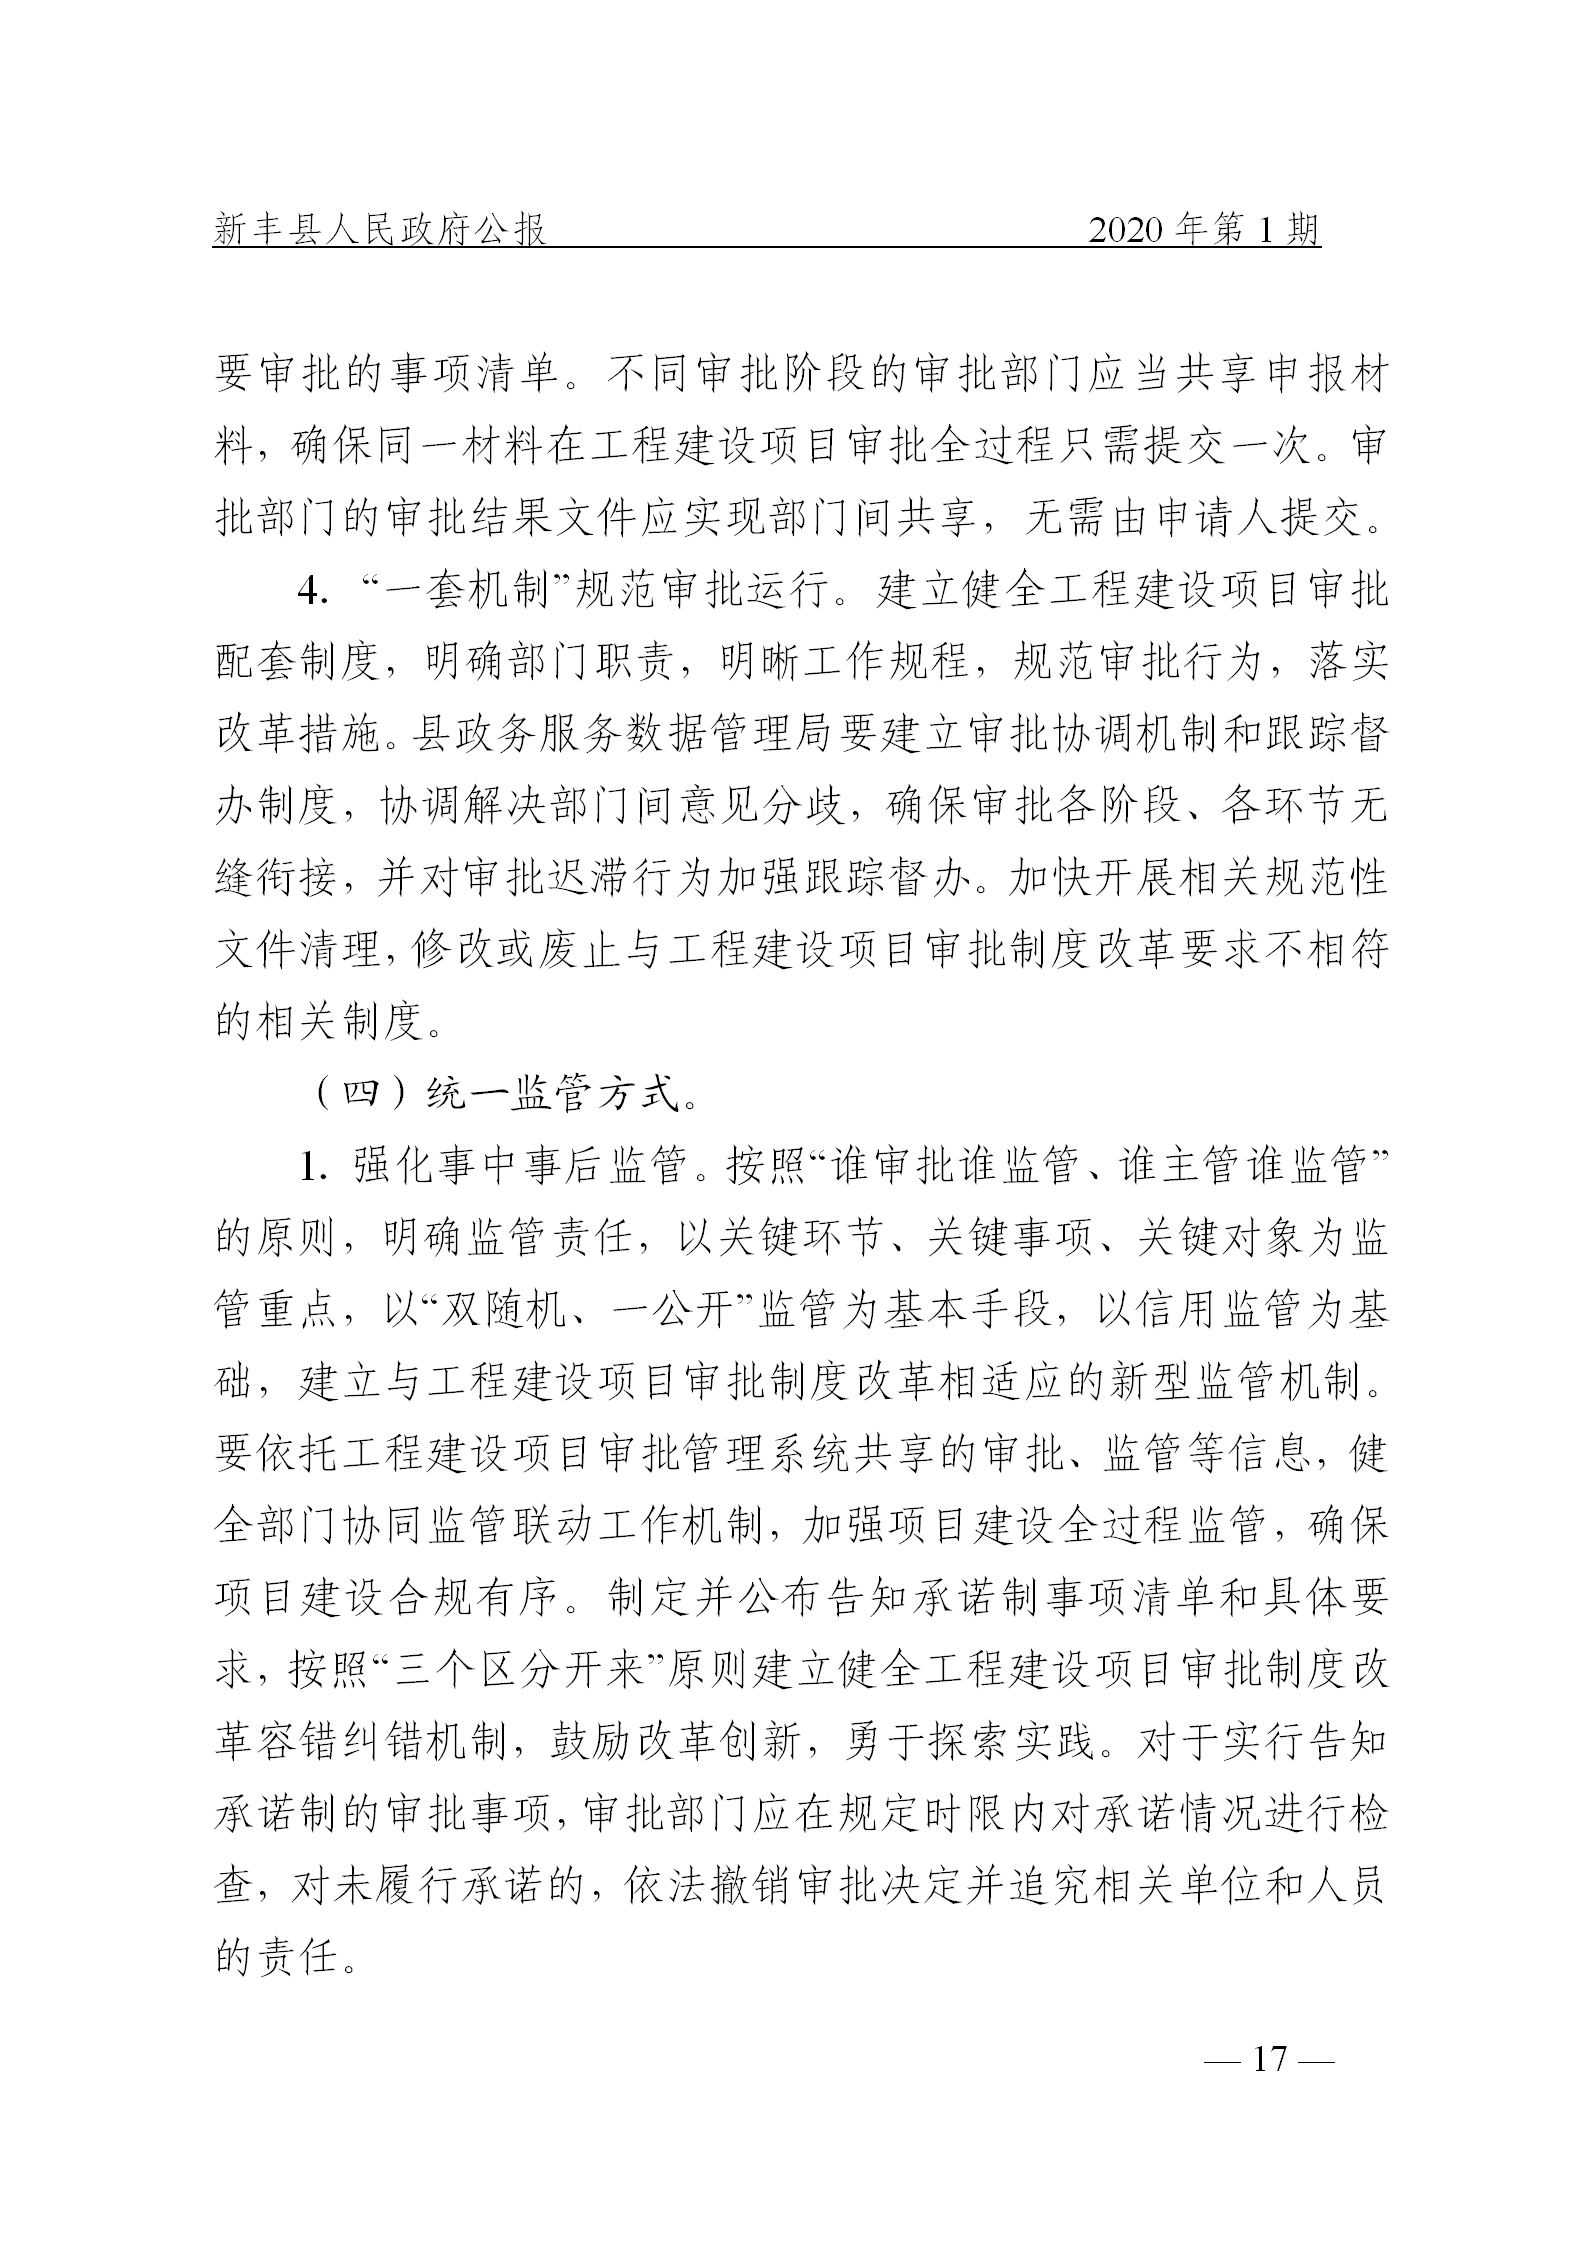 《新丰县人民政府公报》2020年第1期(1)_17.png